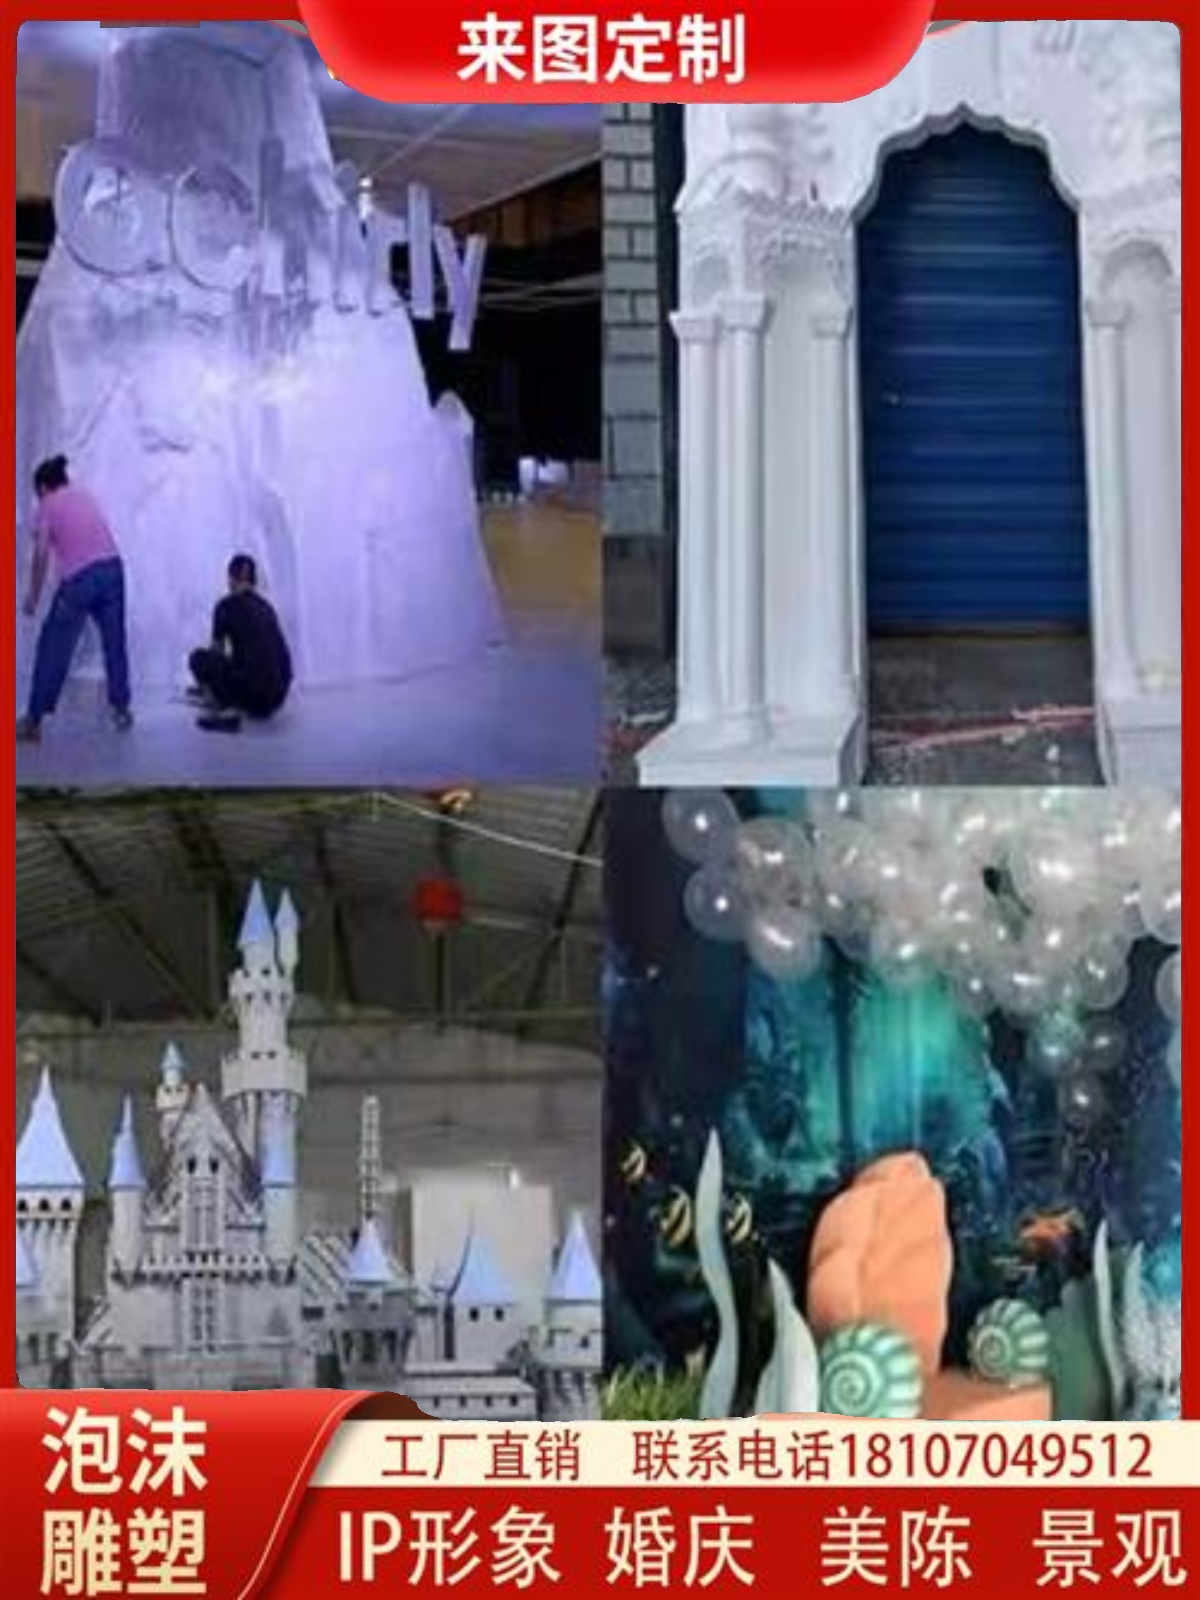 泡沫雕塑定制婚庆城堡舞台背景商业橱窗道具卡通模型美陈景观装饰